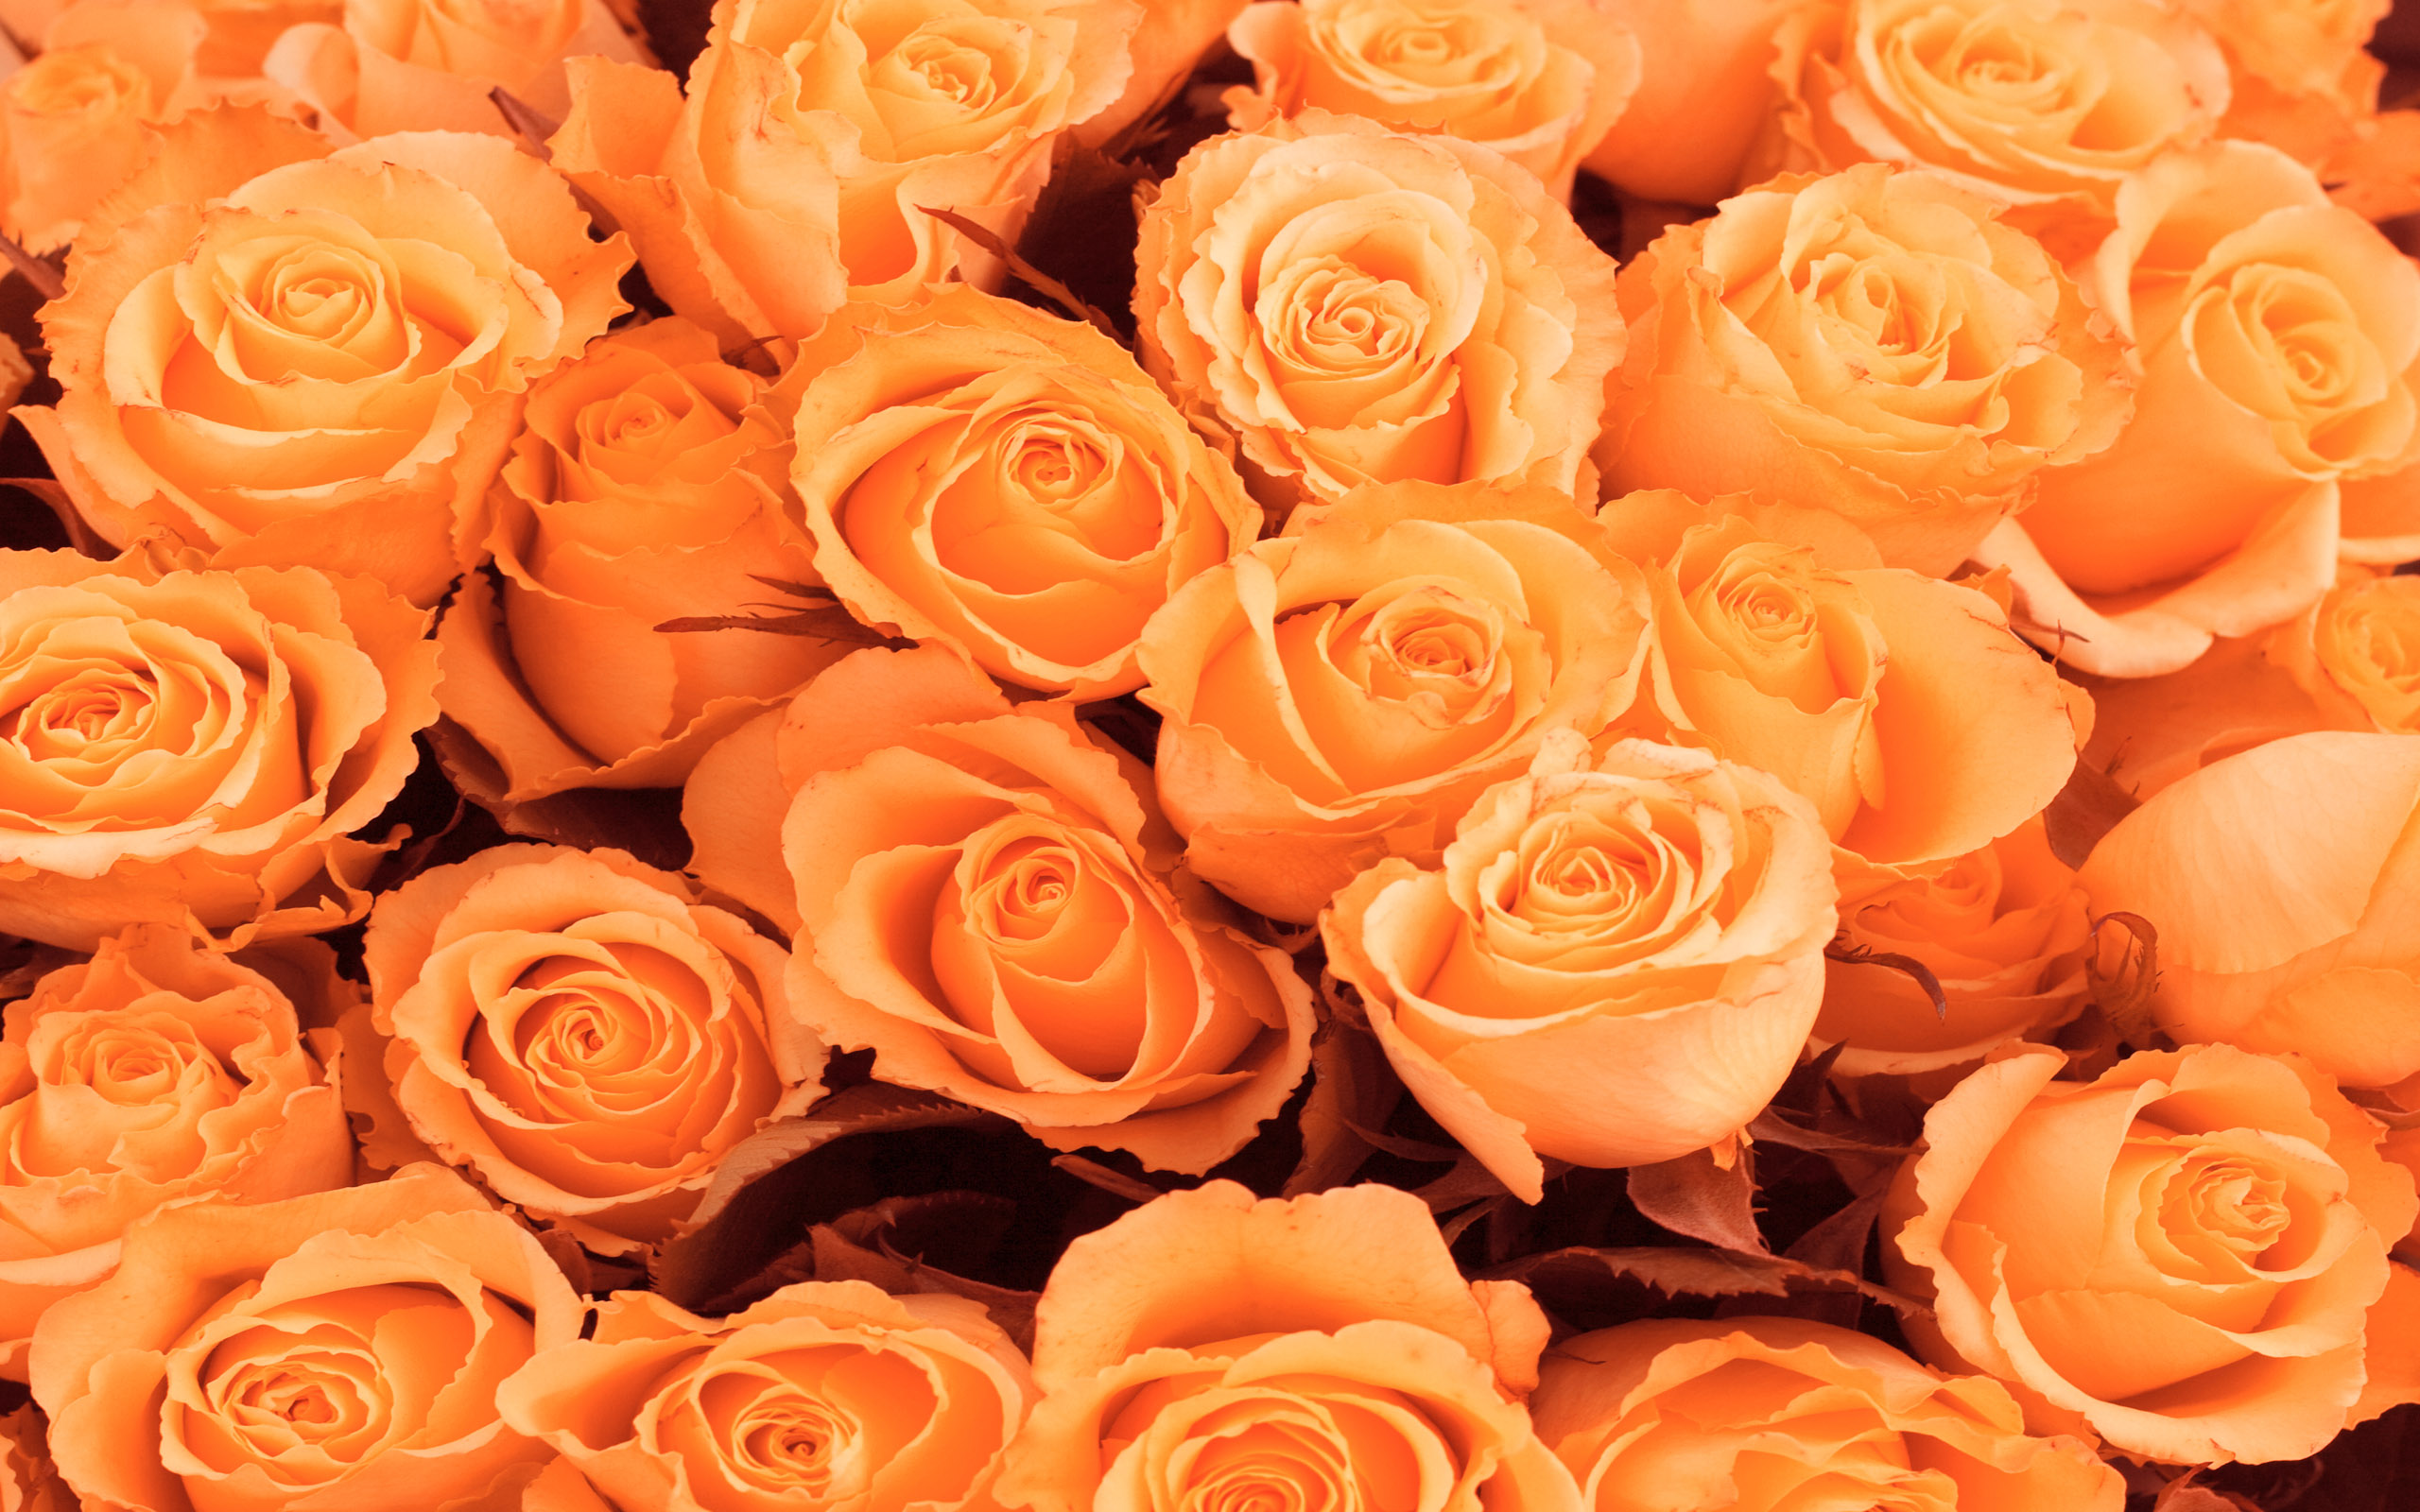 Фото заказанных оранжевых роз